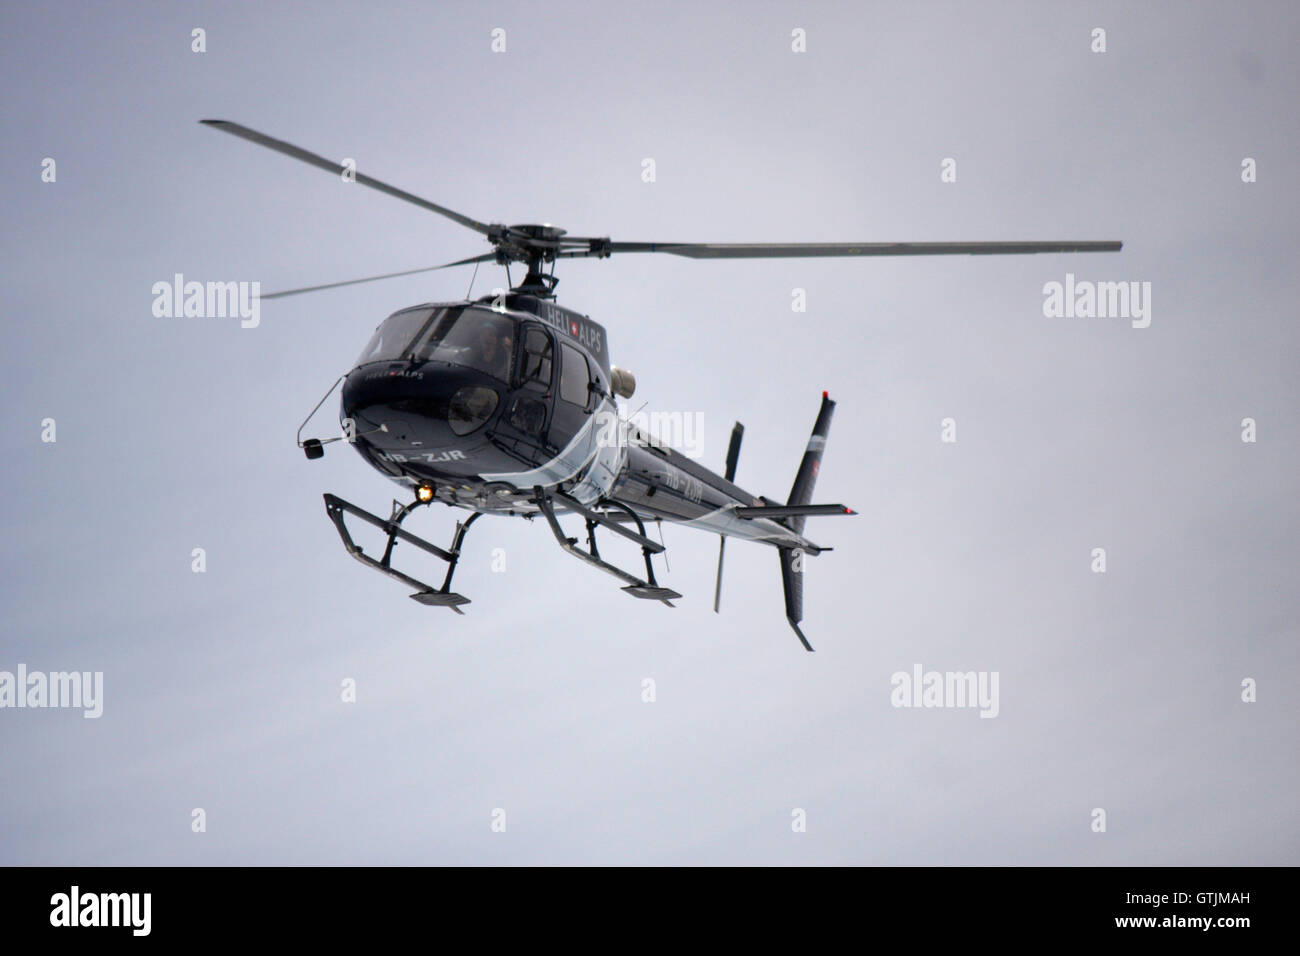 Hubschrauber, Mont Blanc-Massiv, Chamonix Frankreich. Foto Stock